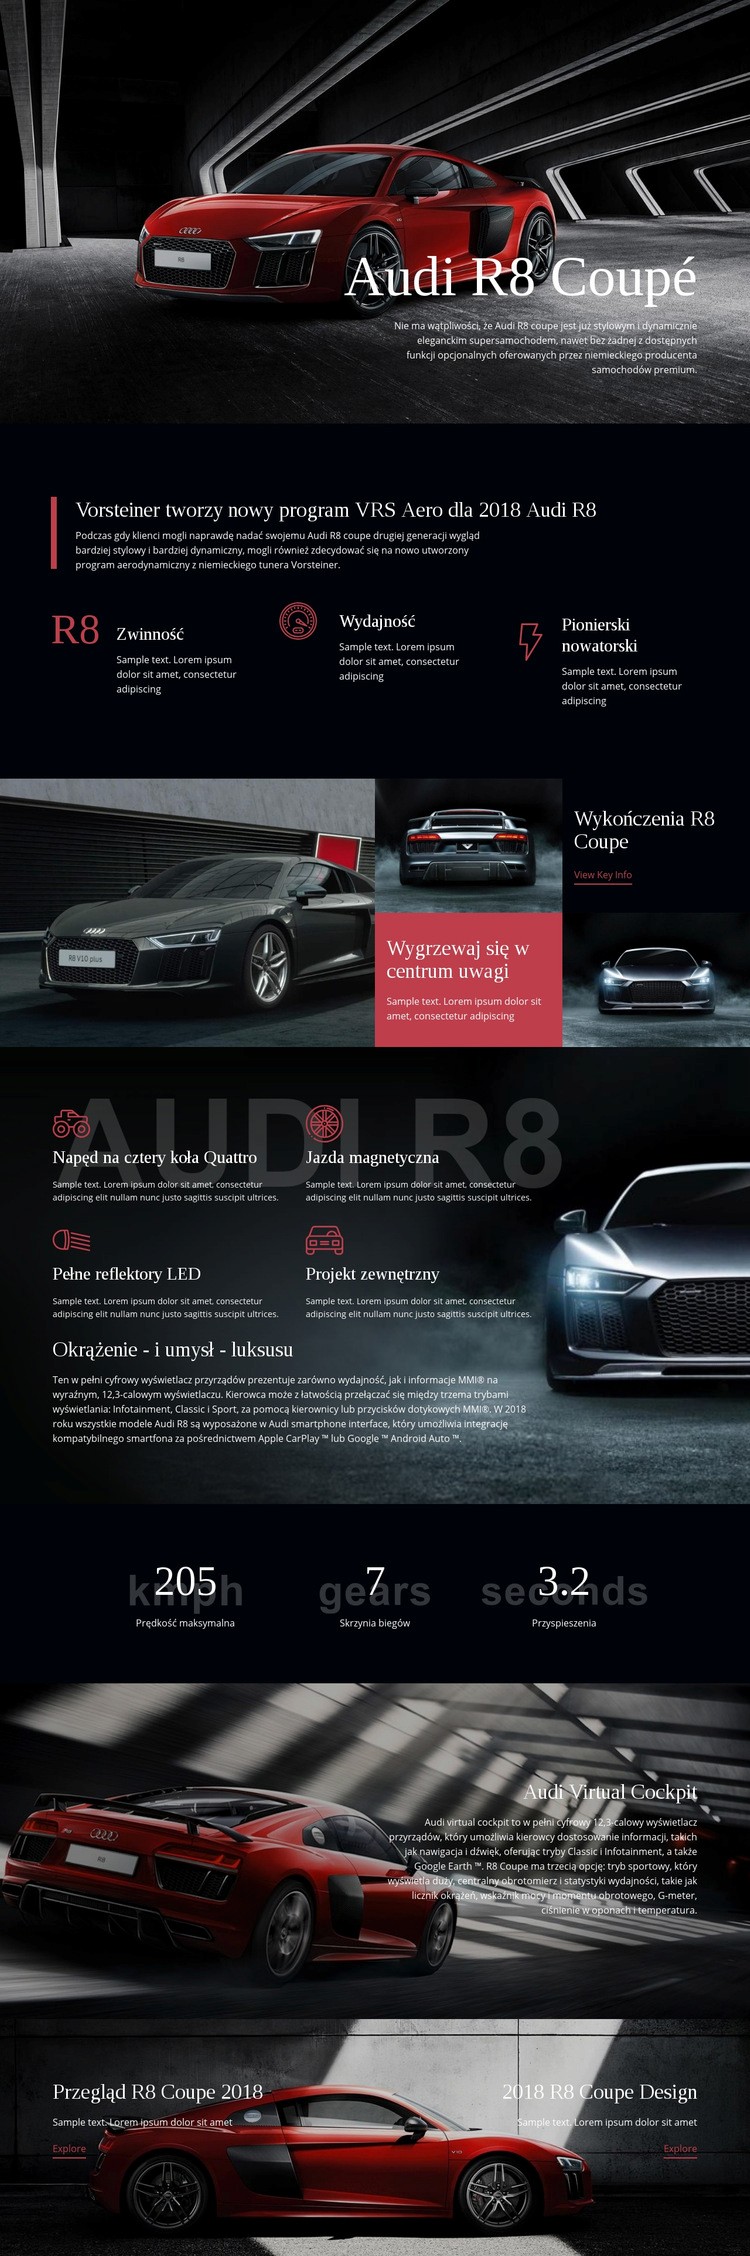 Samochód Audi aero program Wstęp